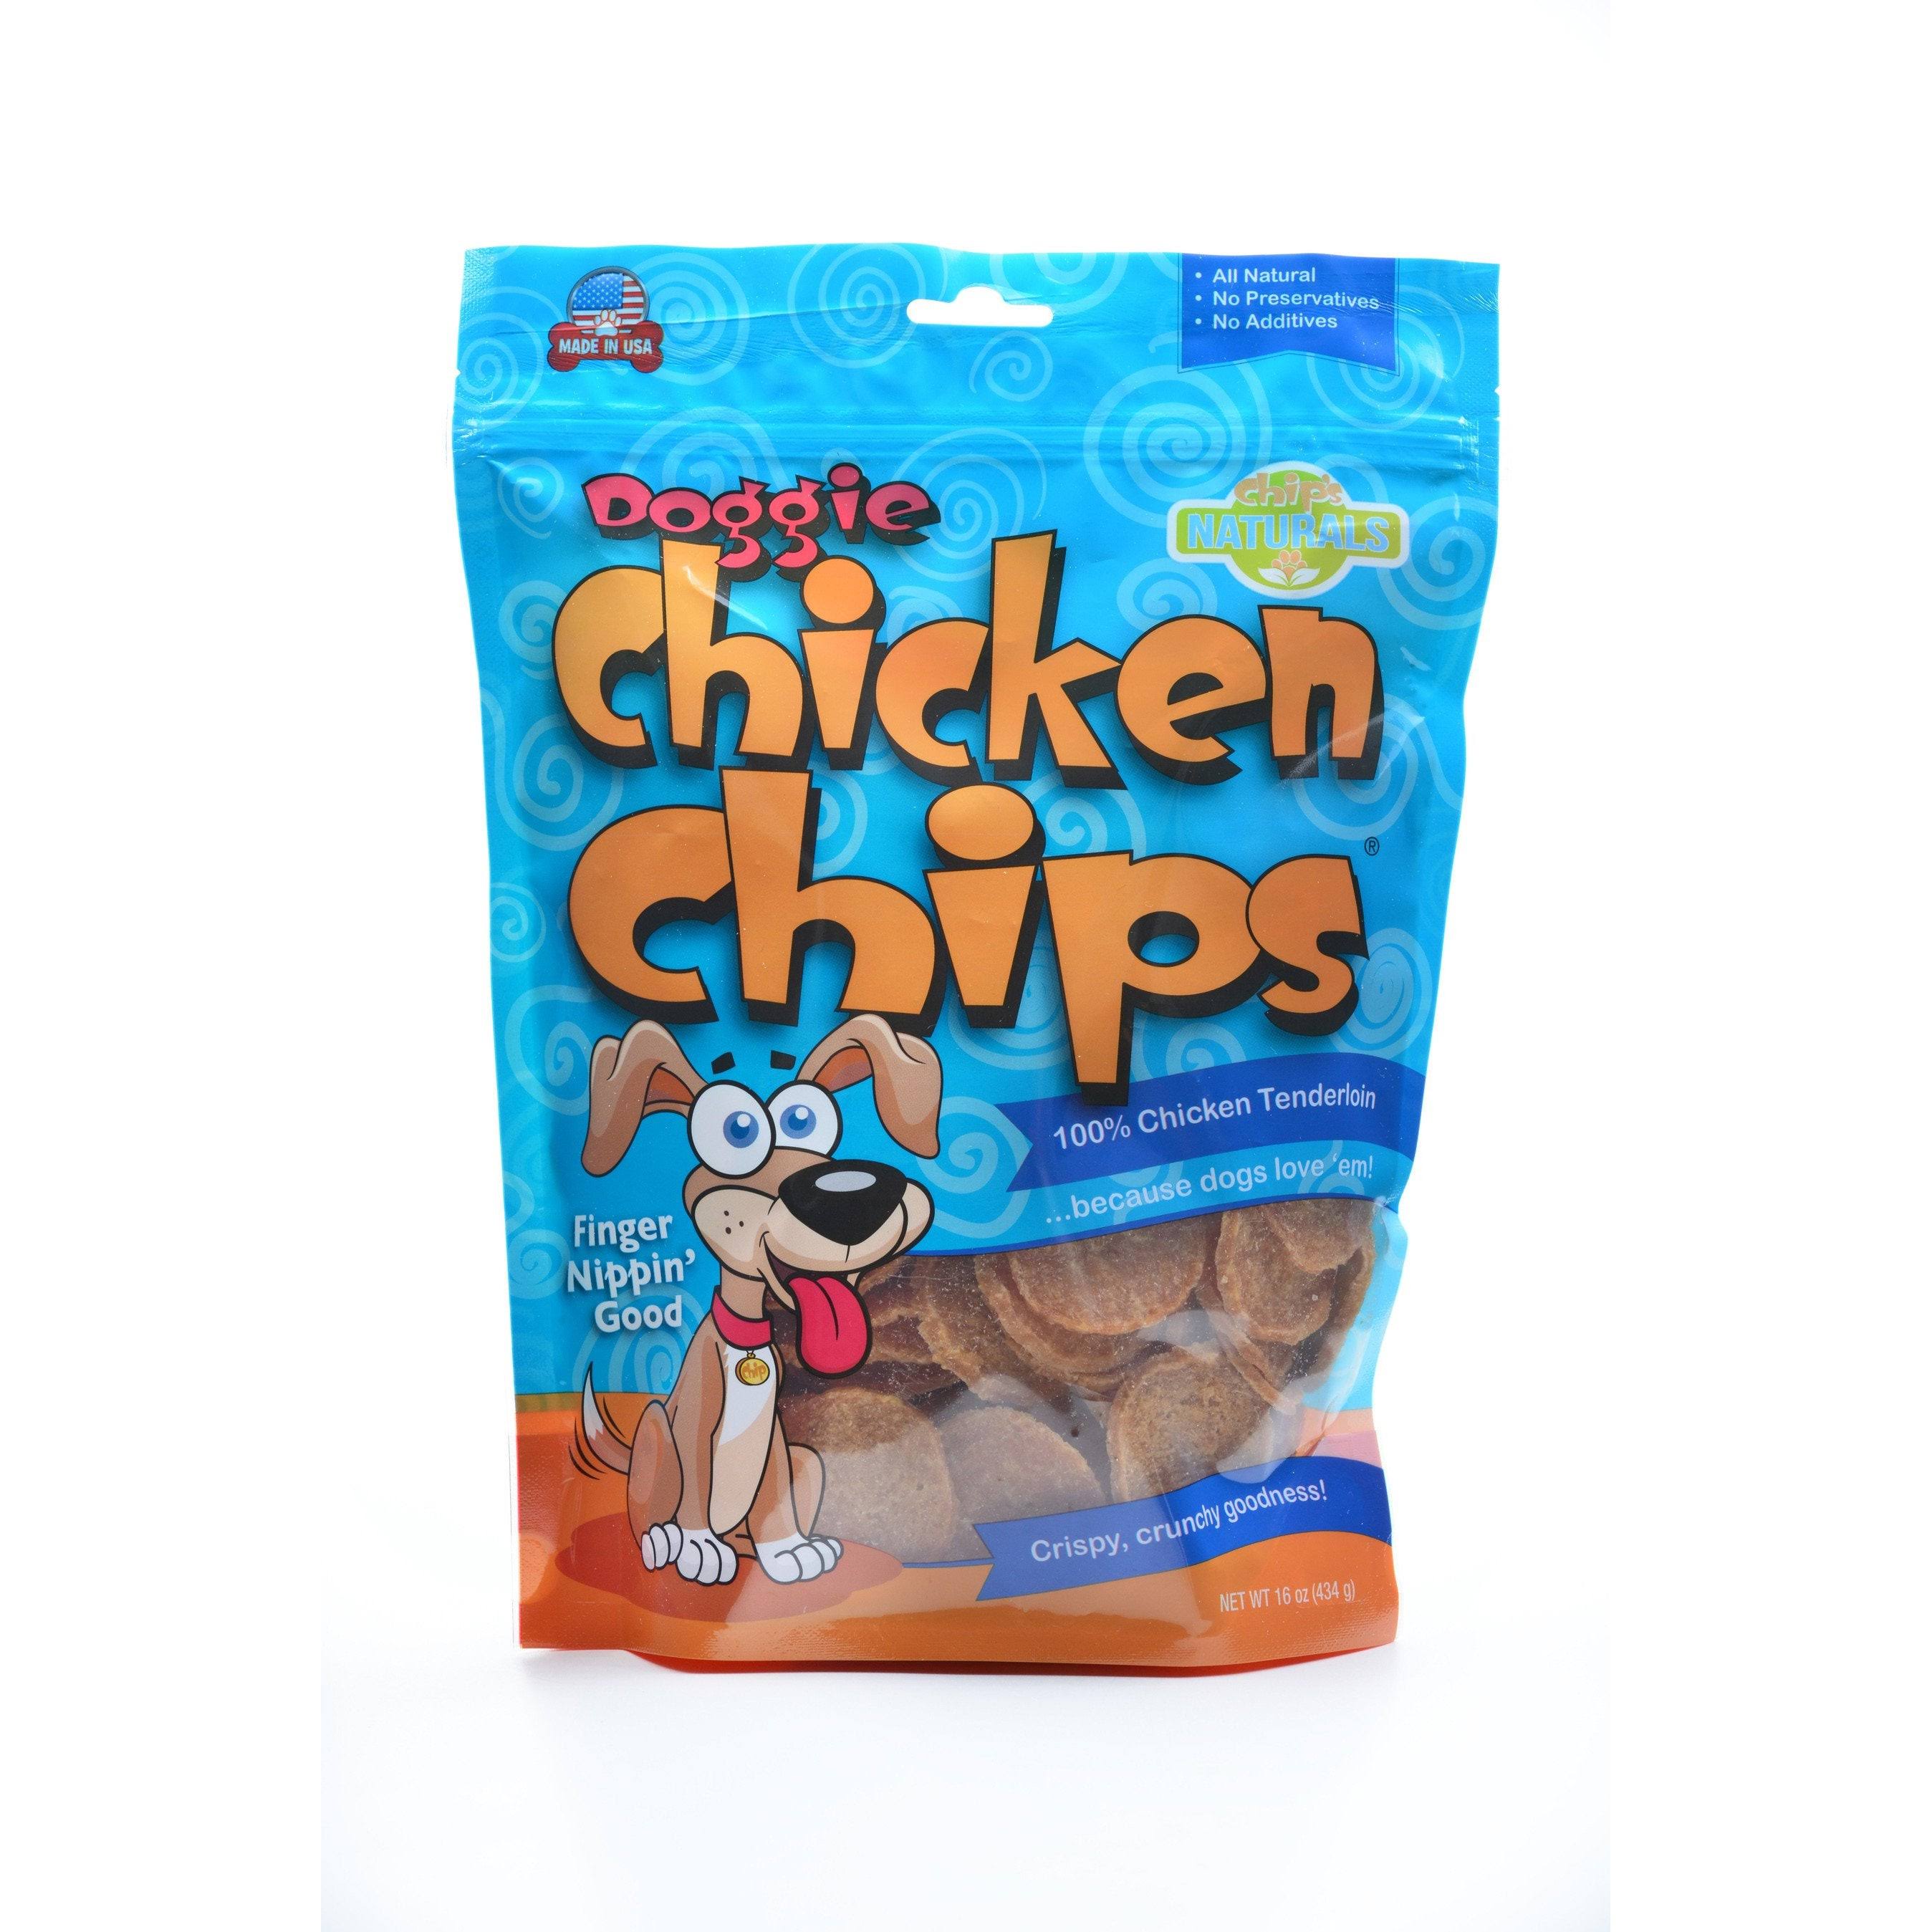 Doggie Chicken Chips Dog Treats 4 oz